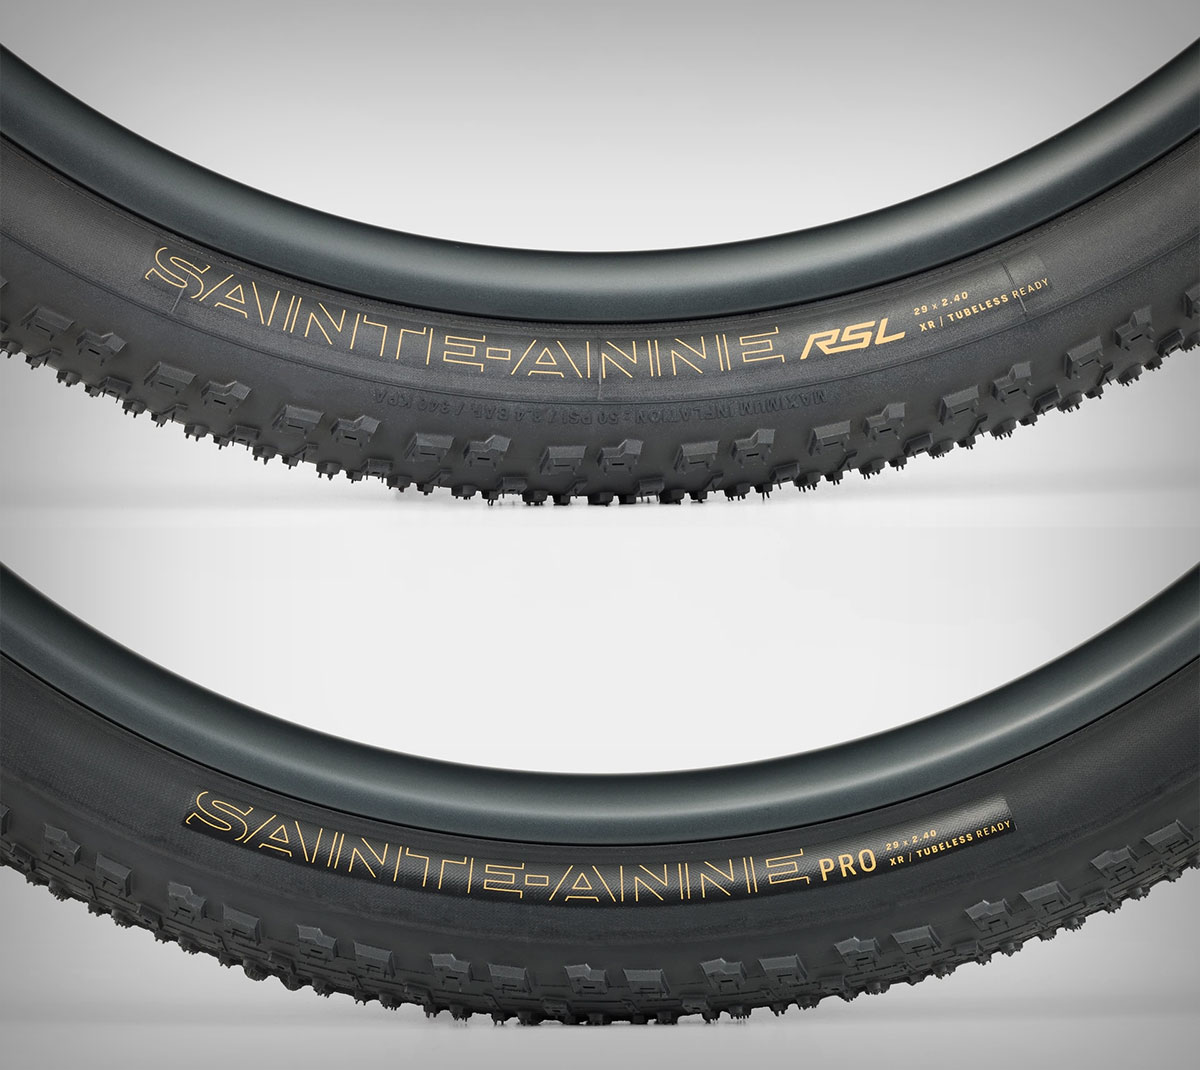 Bontrager presenta los Sainte-Anne y Vallnord, sus dos nuevos neumáticos de alto rendimiento para bicis de XC